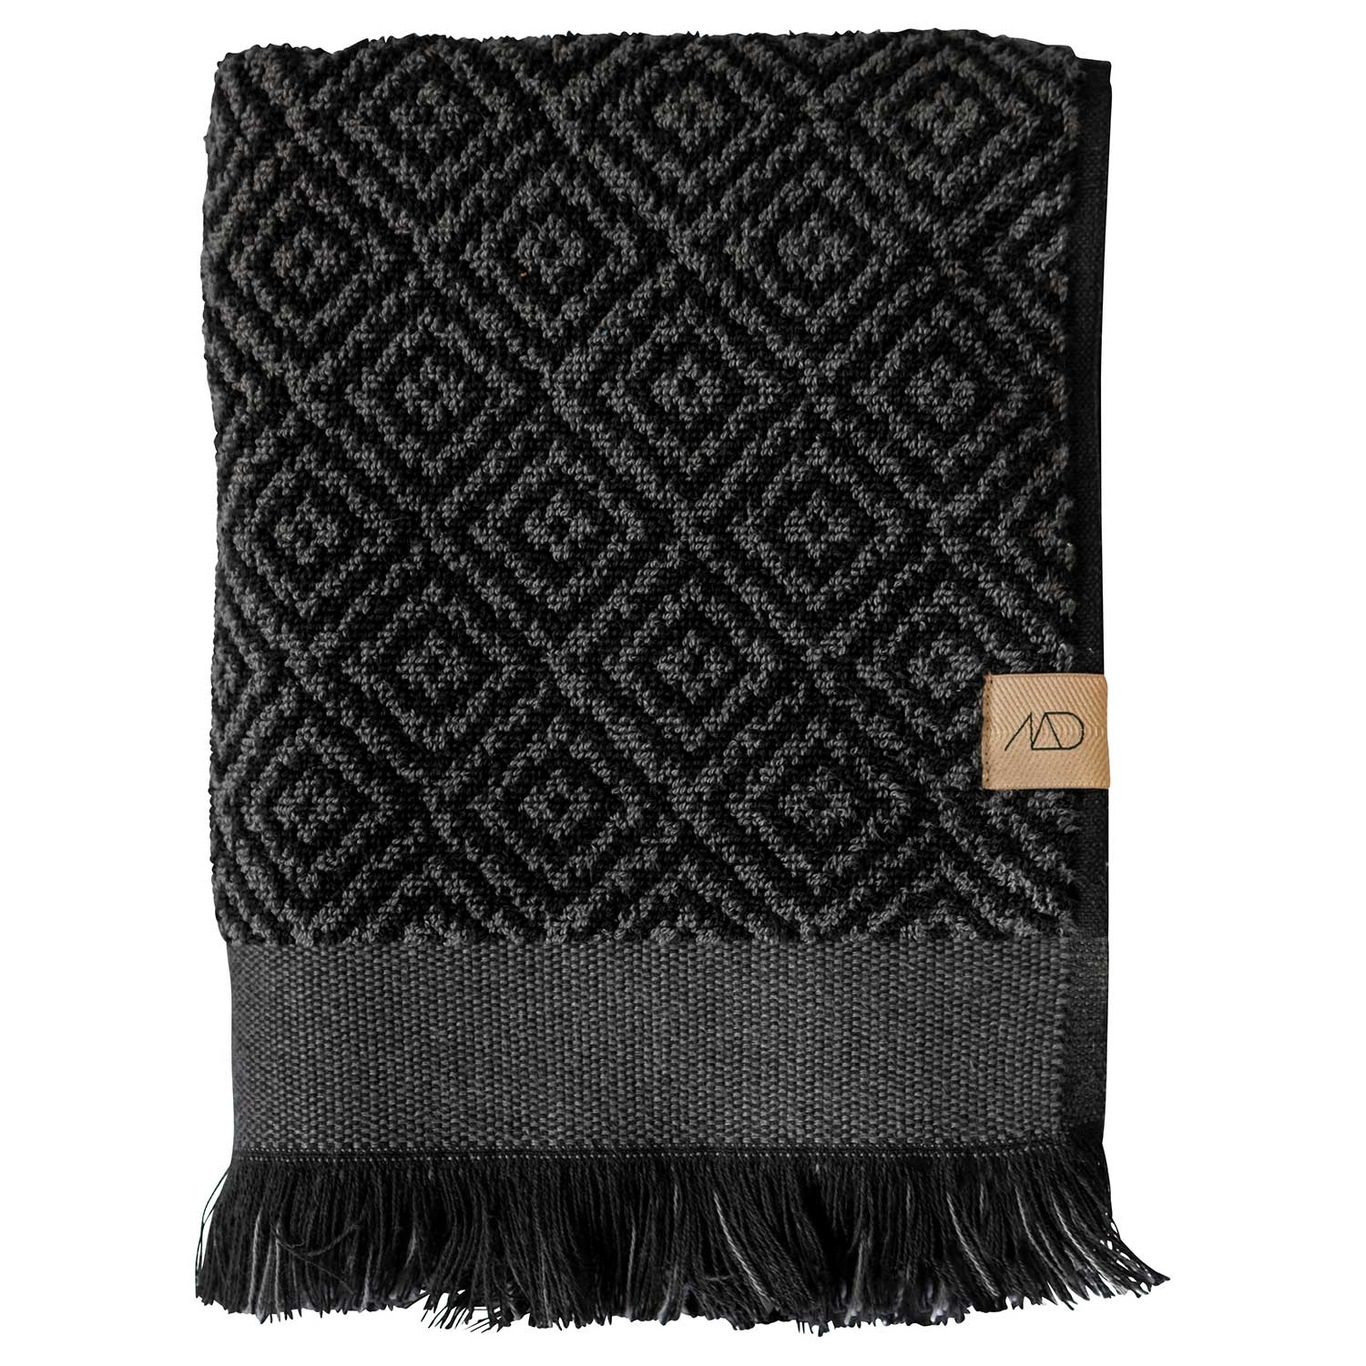 Morocco Handdoek 50 x 95 cm, Zwart/Grijs